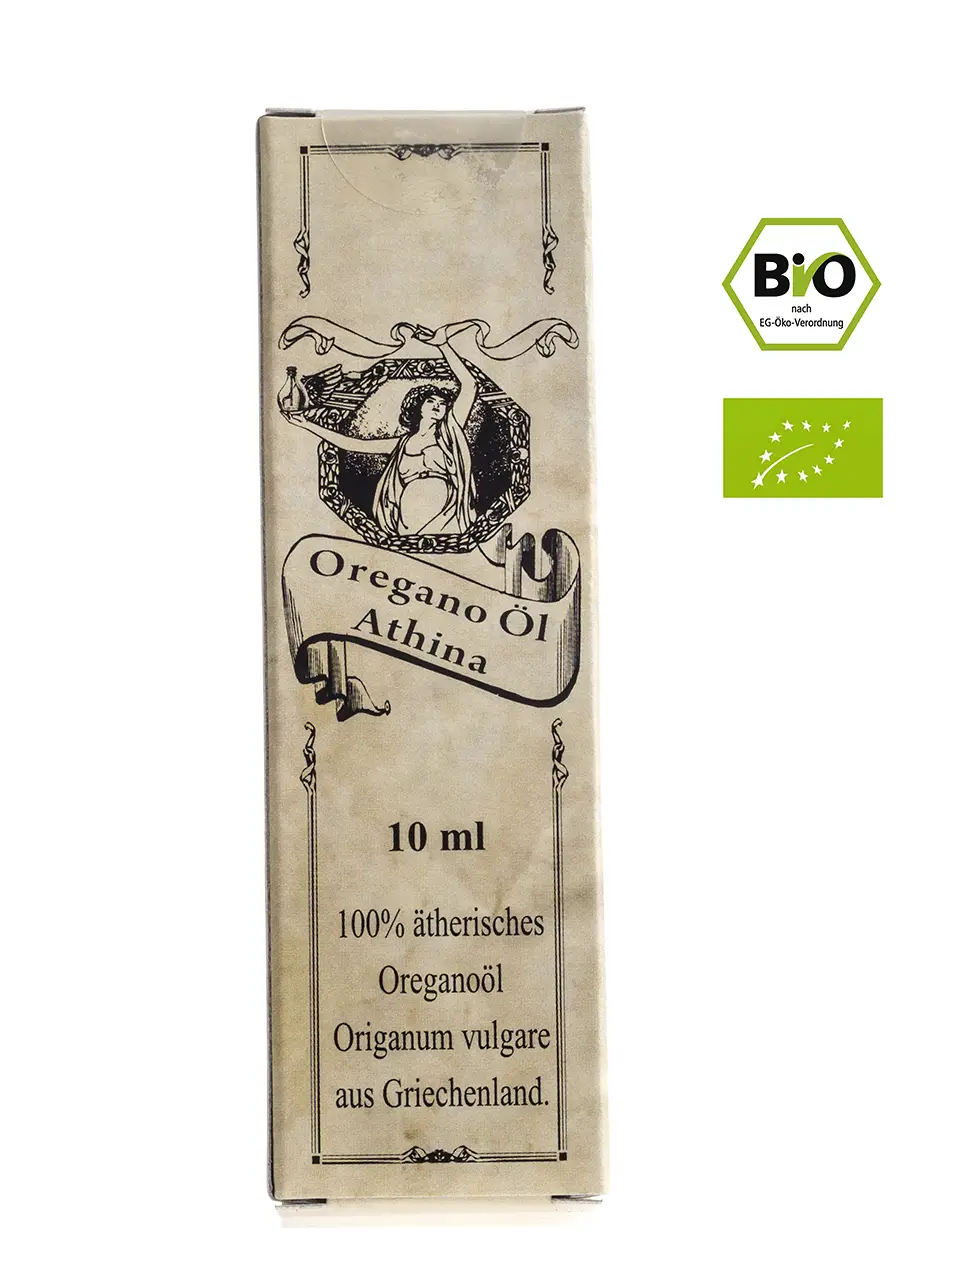 Athina® ätherisches Oregano-Öl, Bio, 10 ml Image